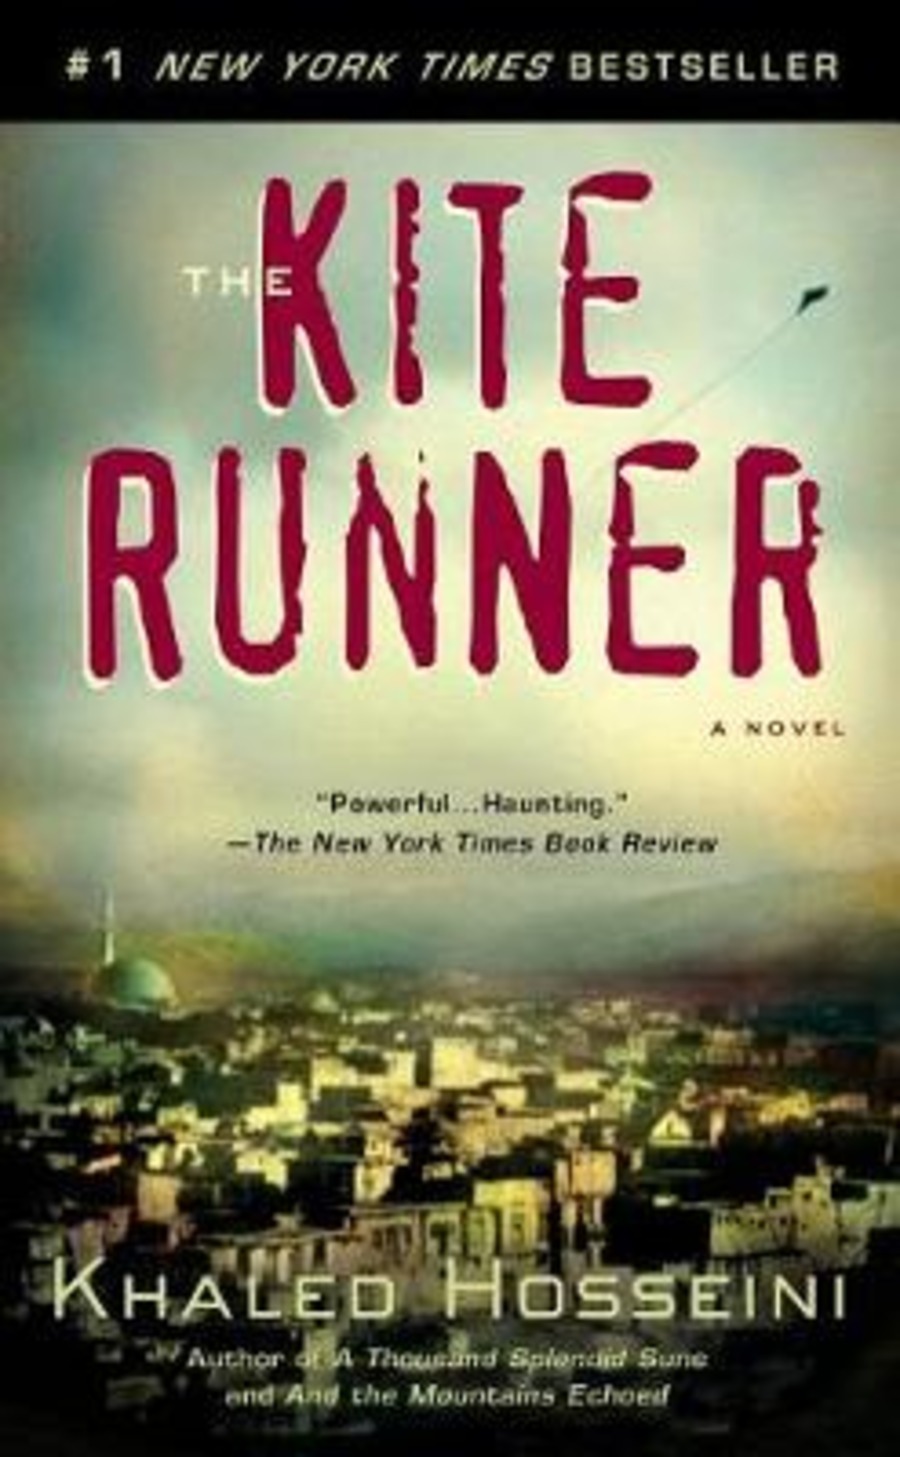 The Kate runner